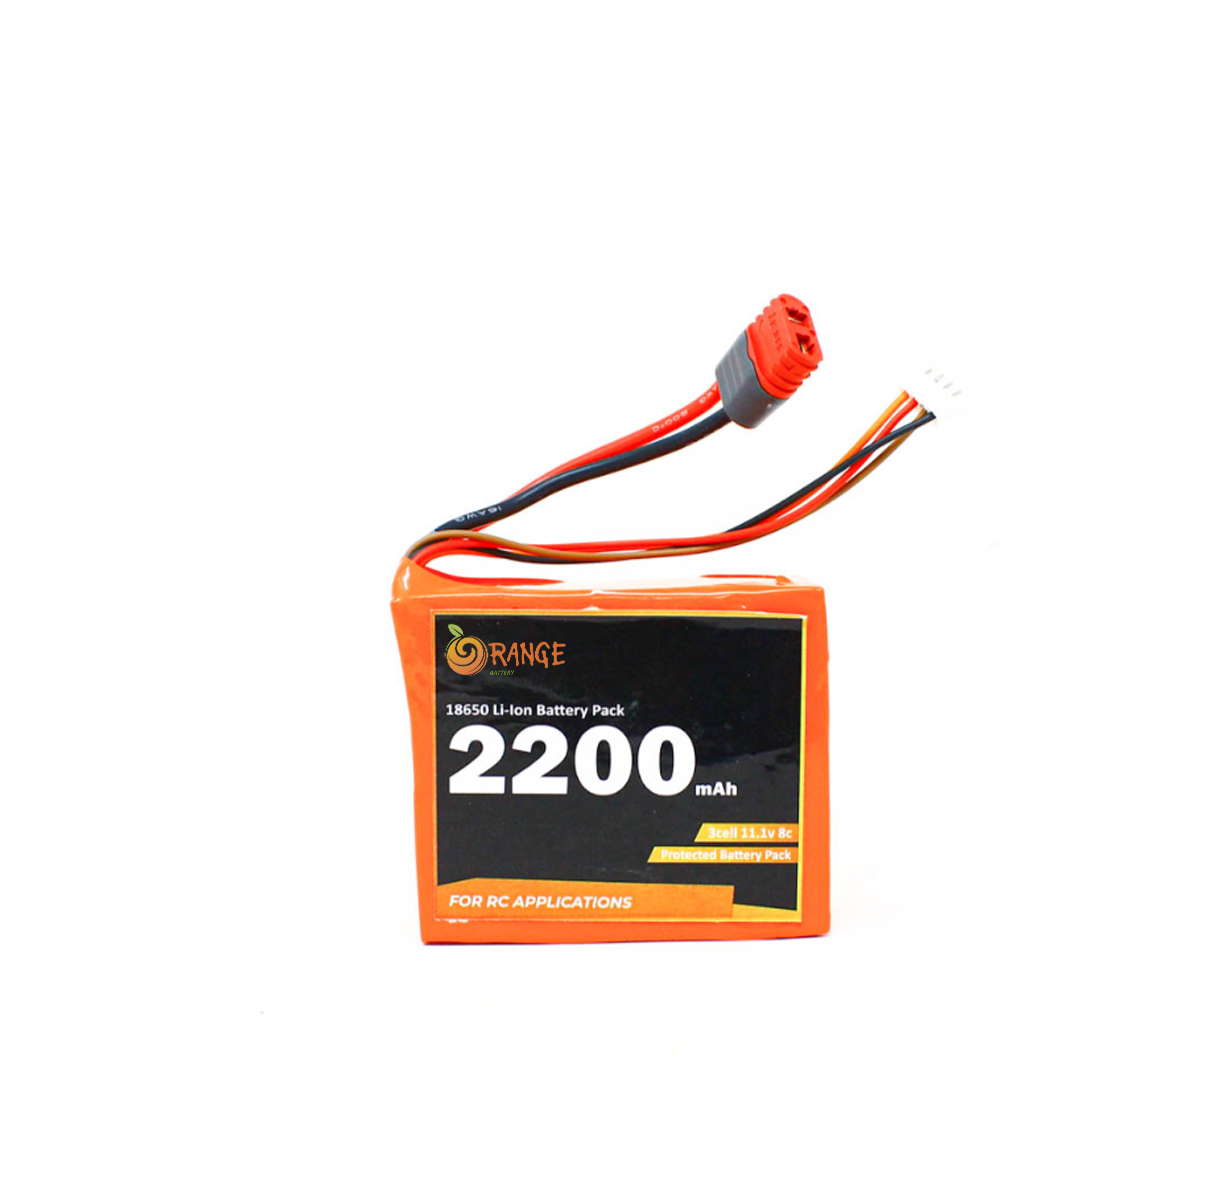 Orange ISR 18650 11.1V 2200mAh 8C 3S1P Li-Ion Battery Pack